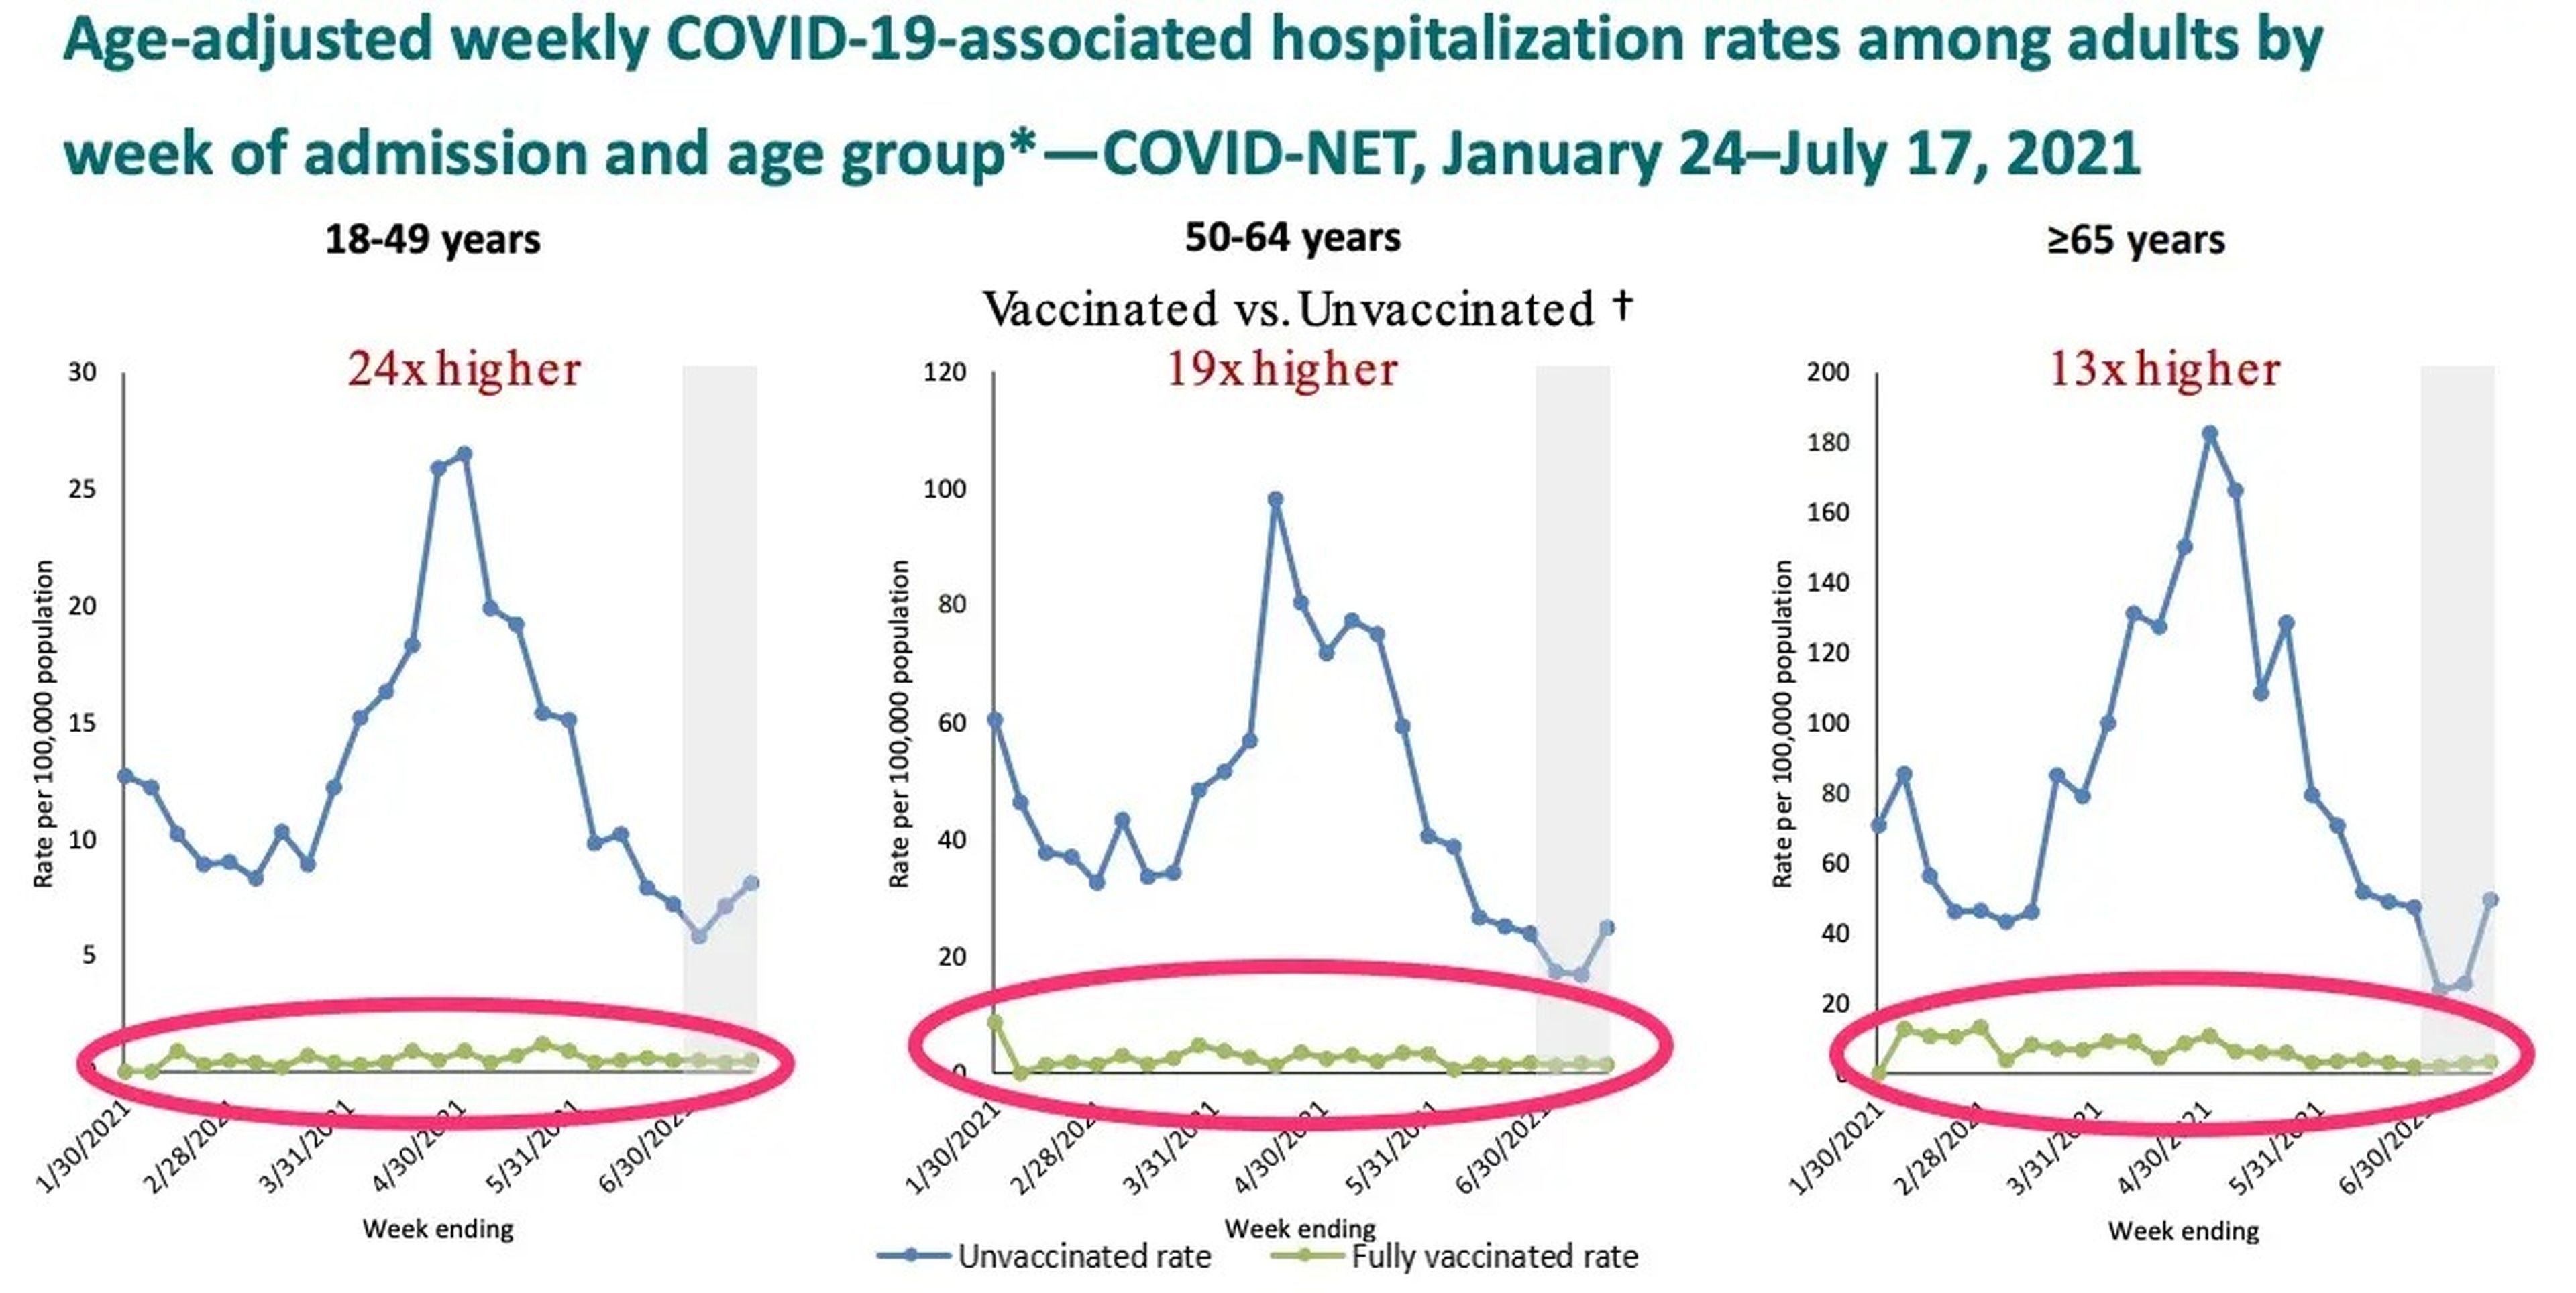 Tasas semanales de hospitalización asociadas a COVID-19 ajustadas por edad entre adultos por semana de ingreso y grupo de edad* —COVID-NET, del 24 de enero al 17 de julio de 2021—.